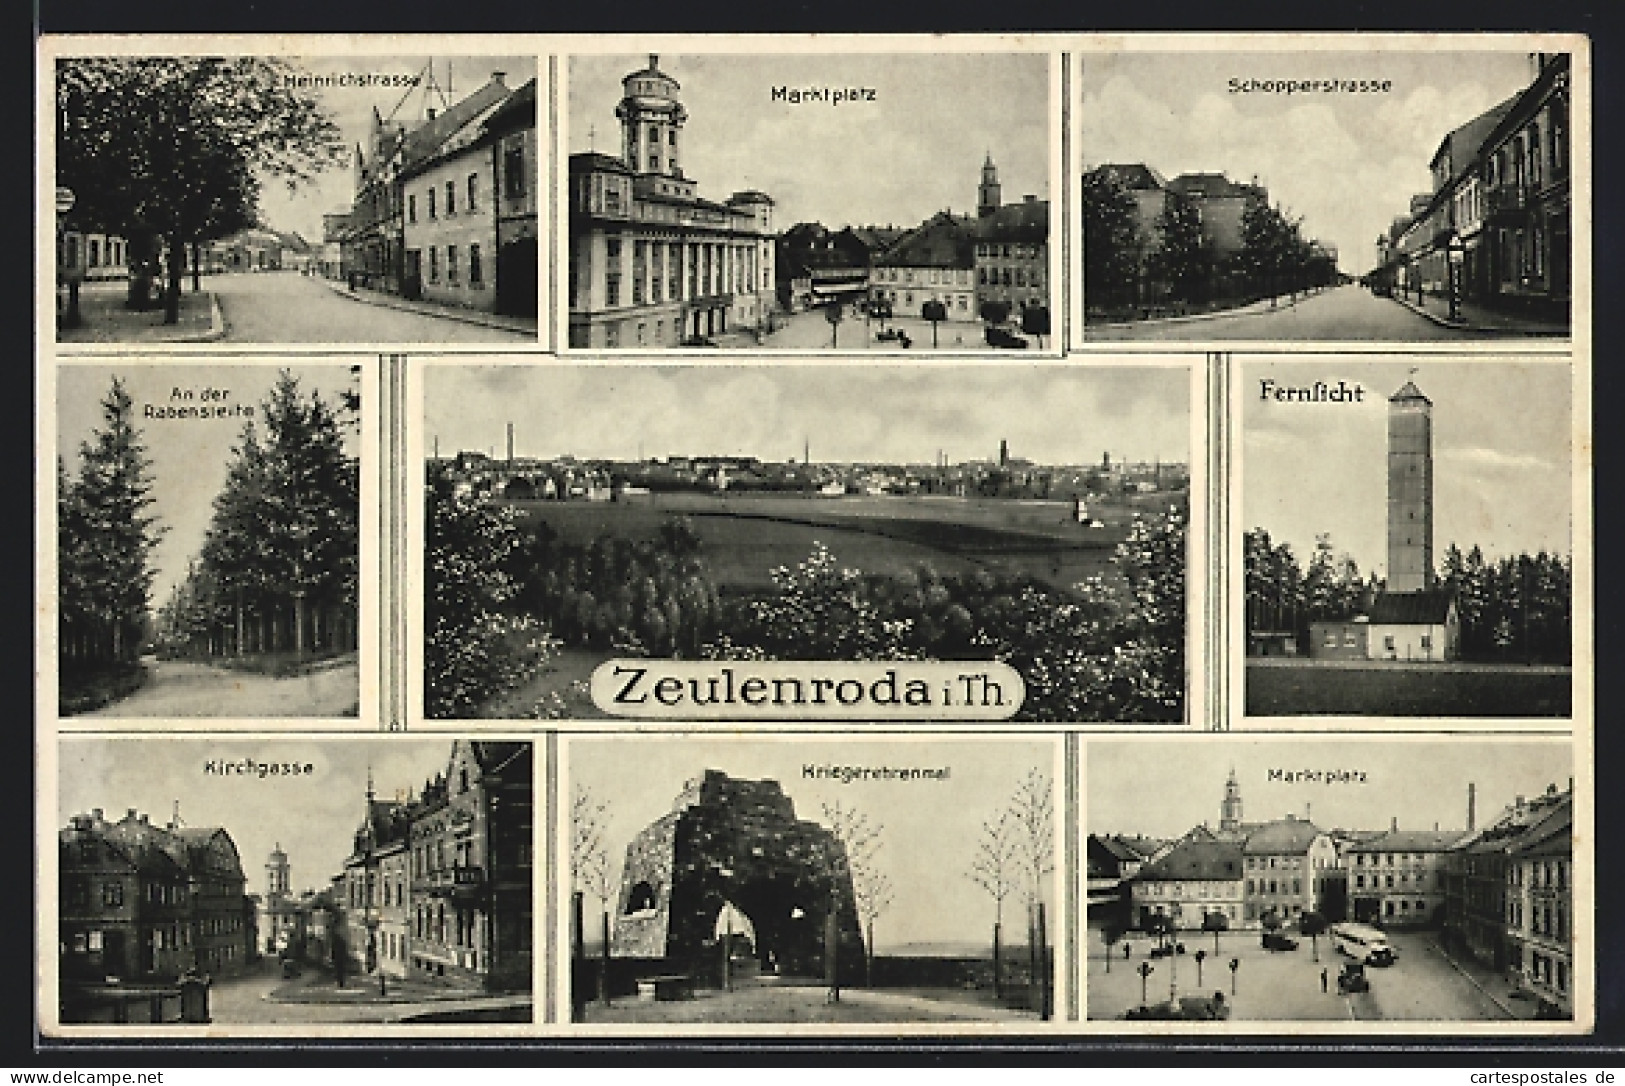 AK Zeulenroda, Kirchgasse, Marktplatz, Schoppergasse, Heinrichstrasse  - Zeulenroda